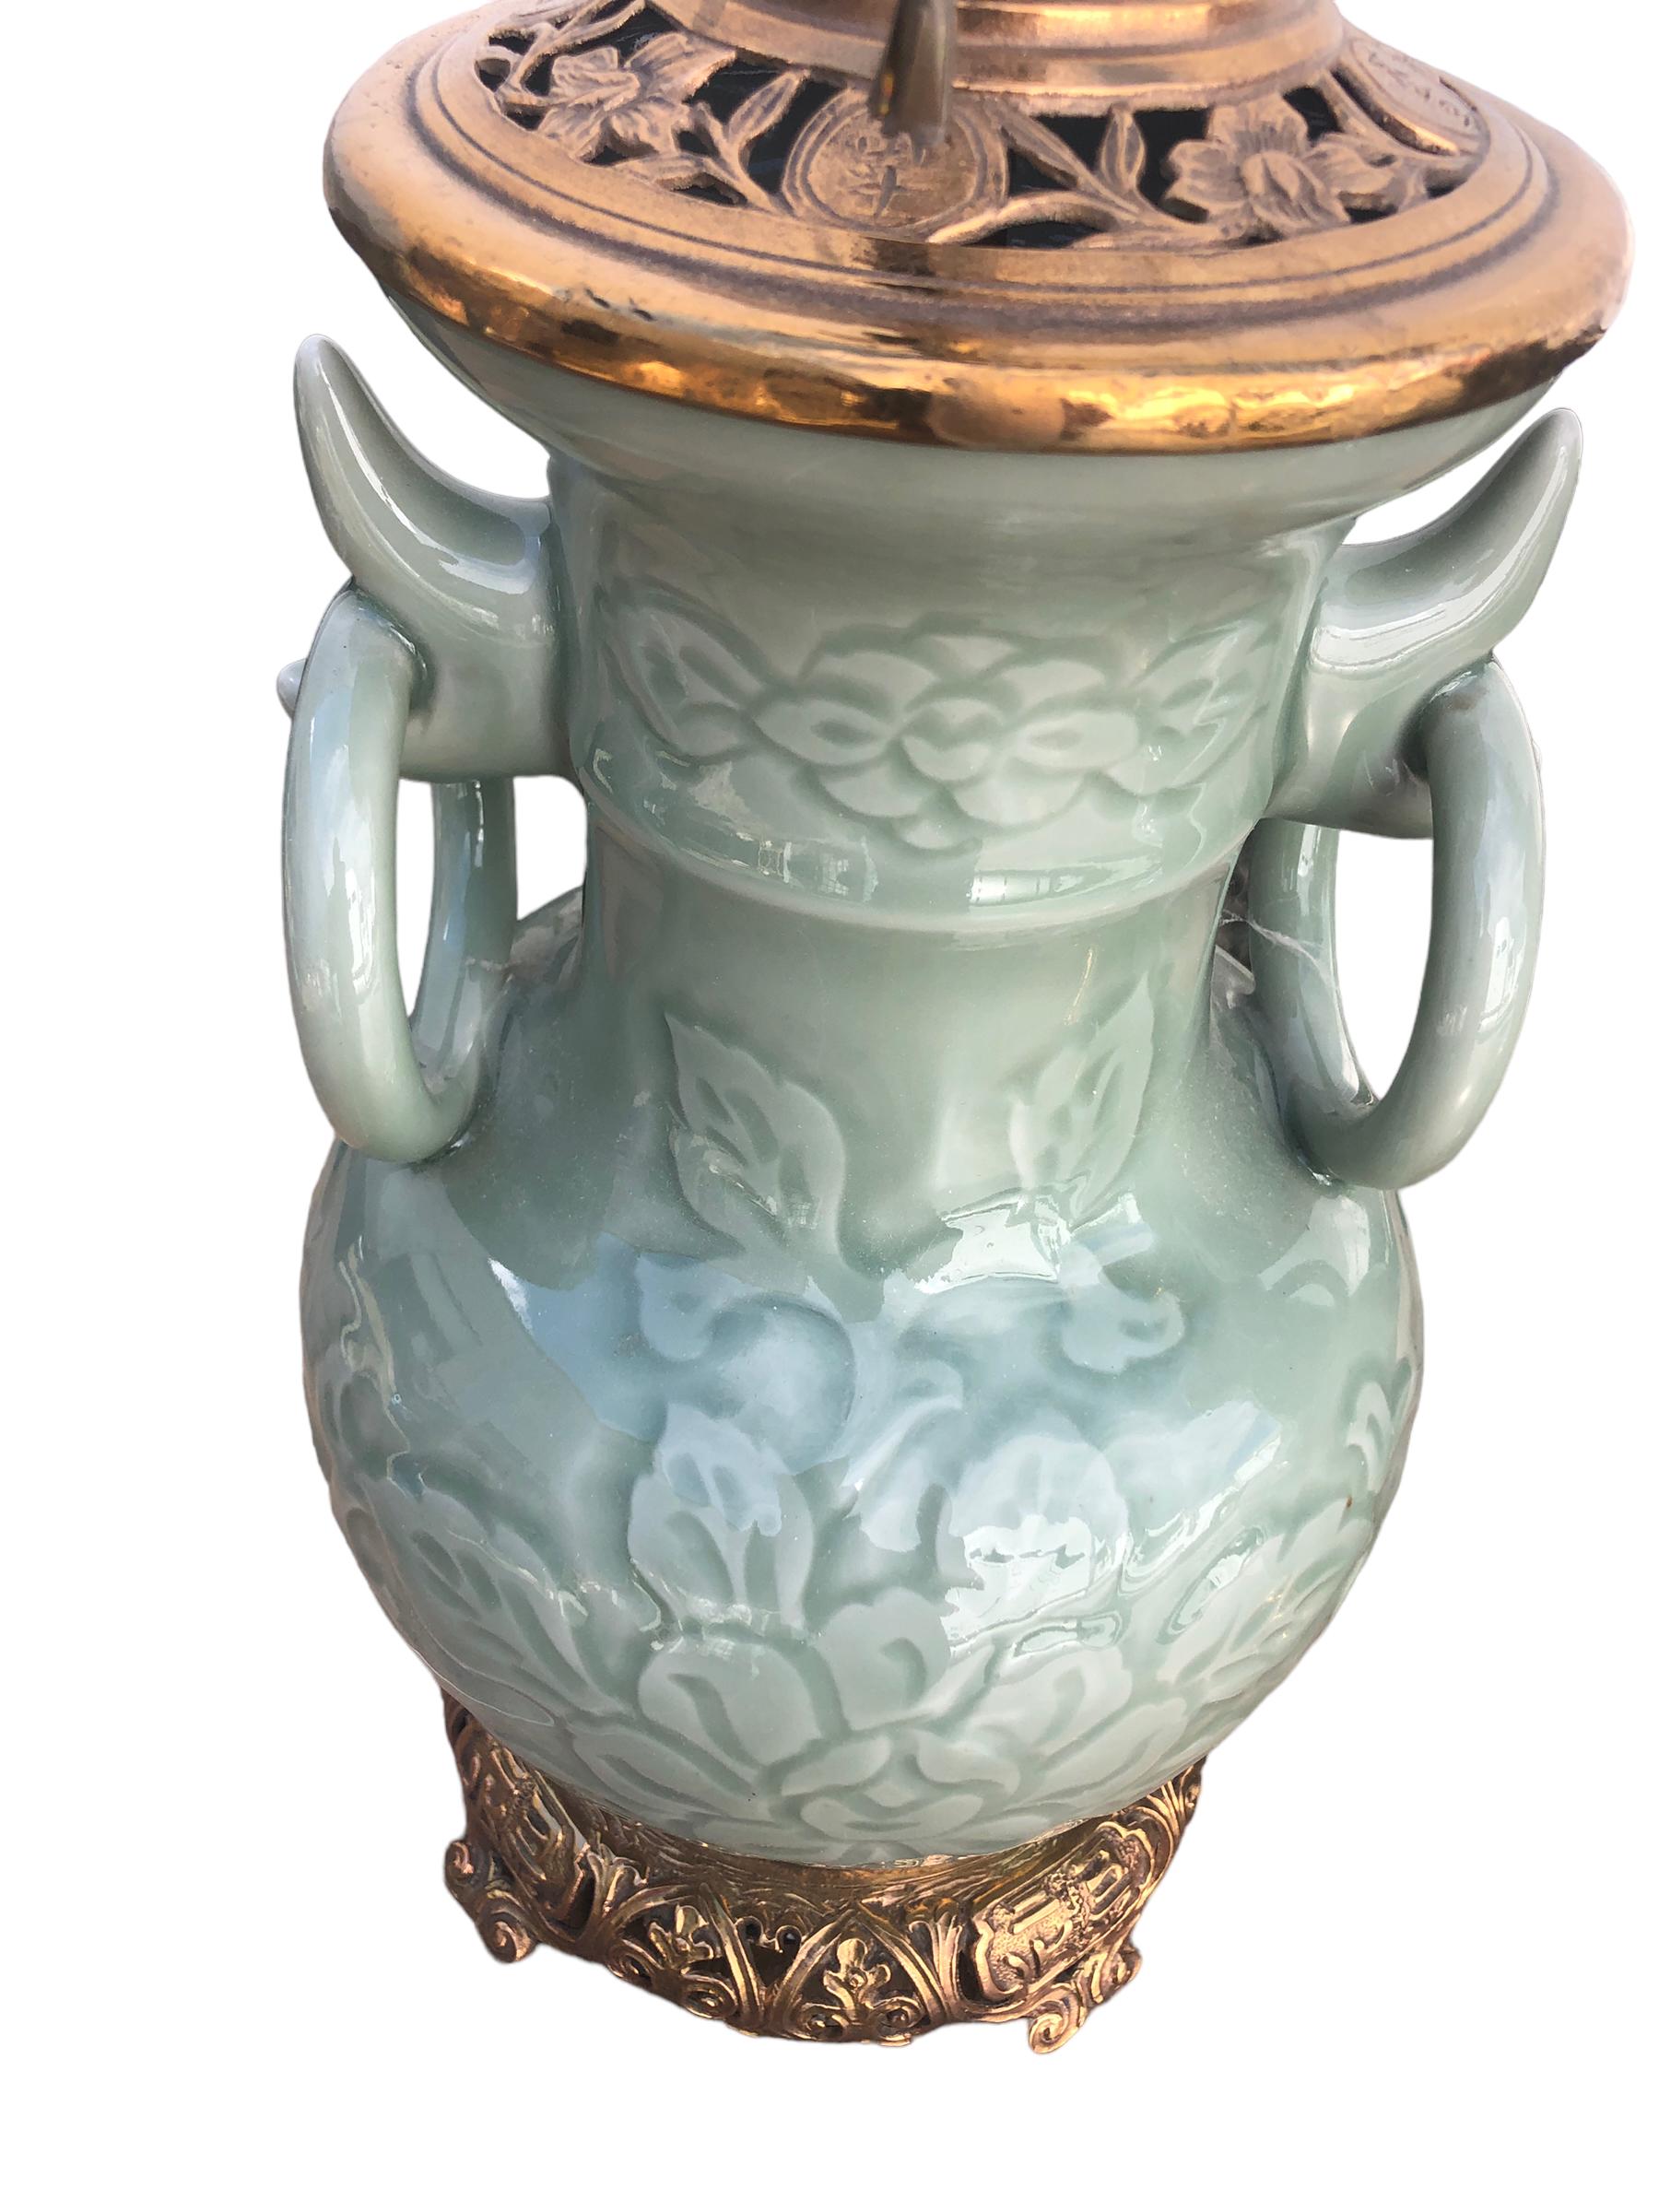 Une belle paire de lampes anciennes chinoises en céladon avec des motifs de feuillage en relief et de larges anneaux appliqués. Les lampes sont montées avec un raccord en bronze chinois. Les lampes ont probablement été électrifiées dans les années